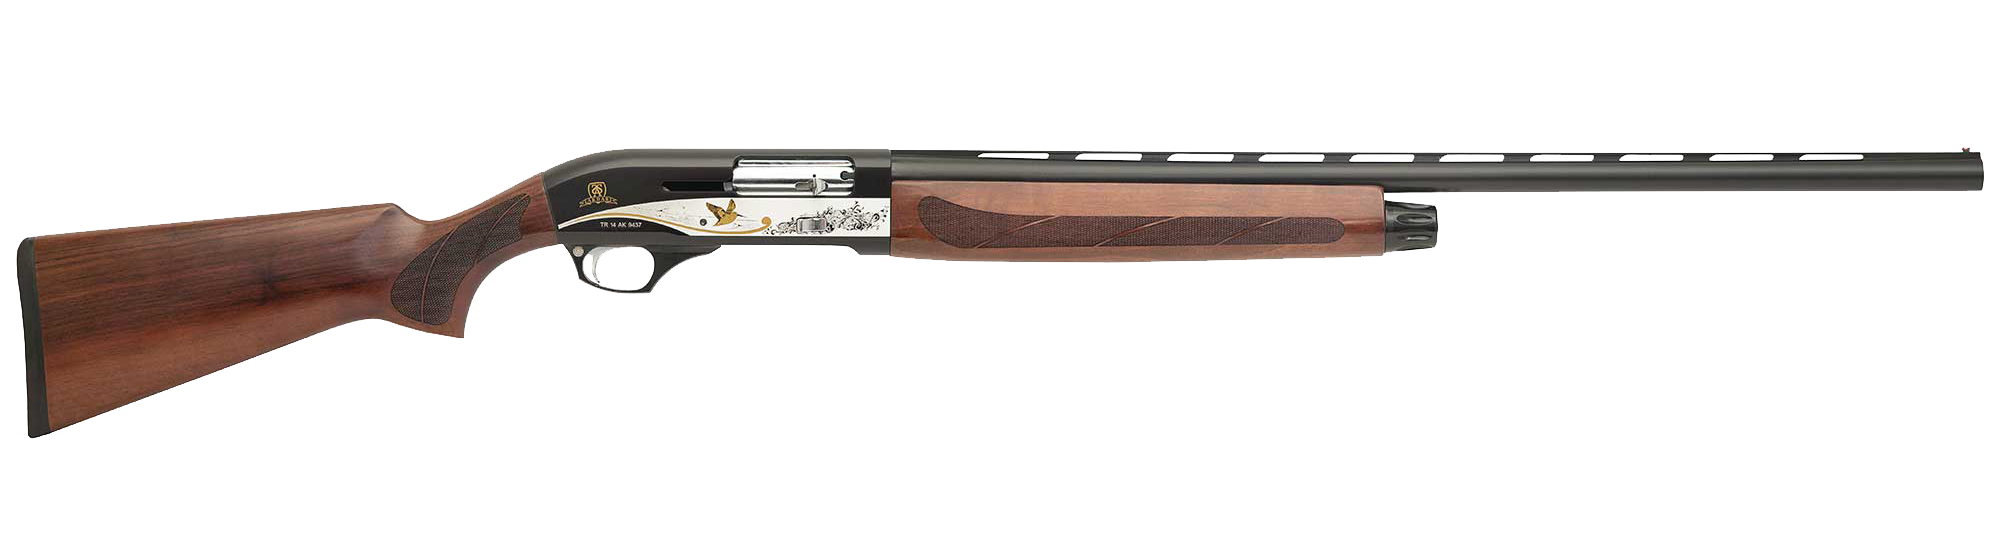 SEMI مضخة أوتوماتيكية بندقية AG 212-L